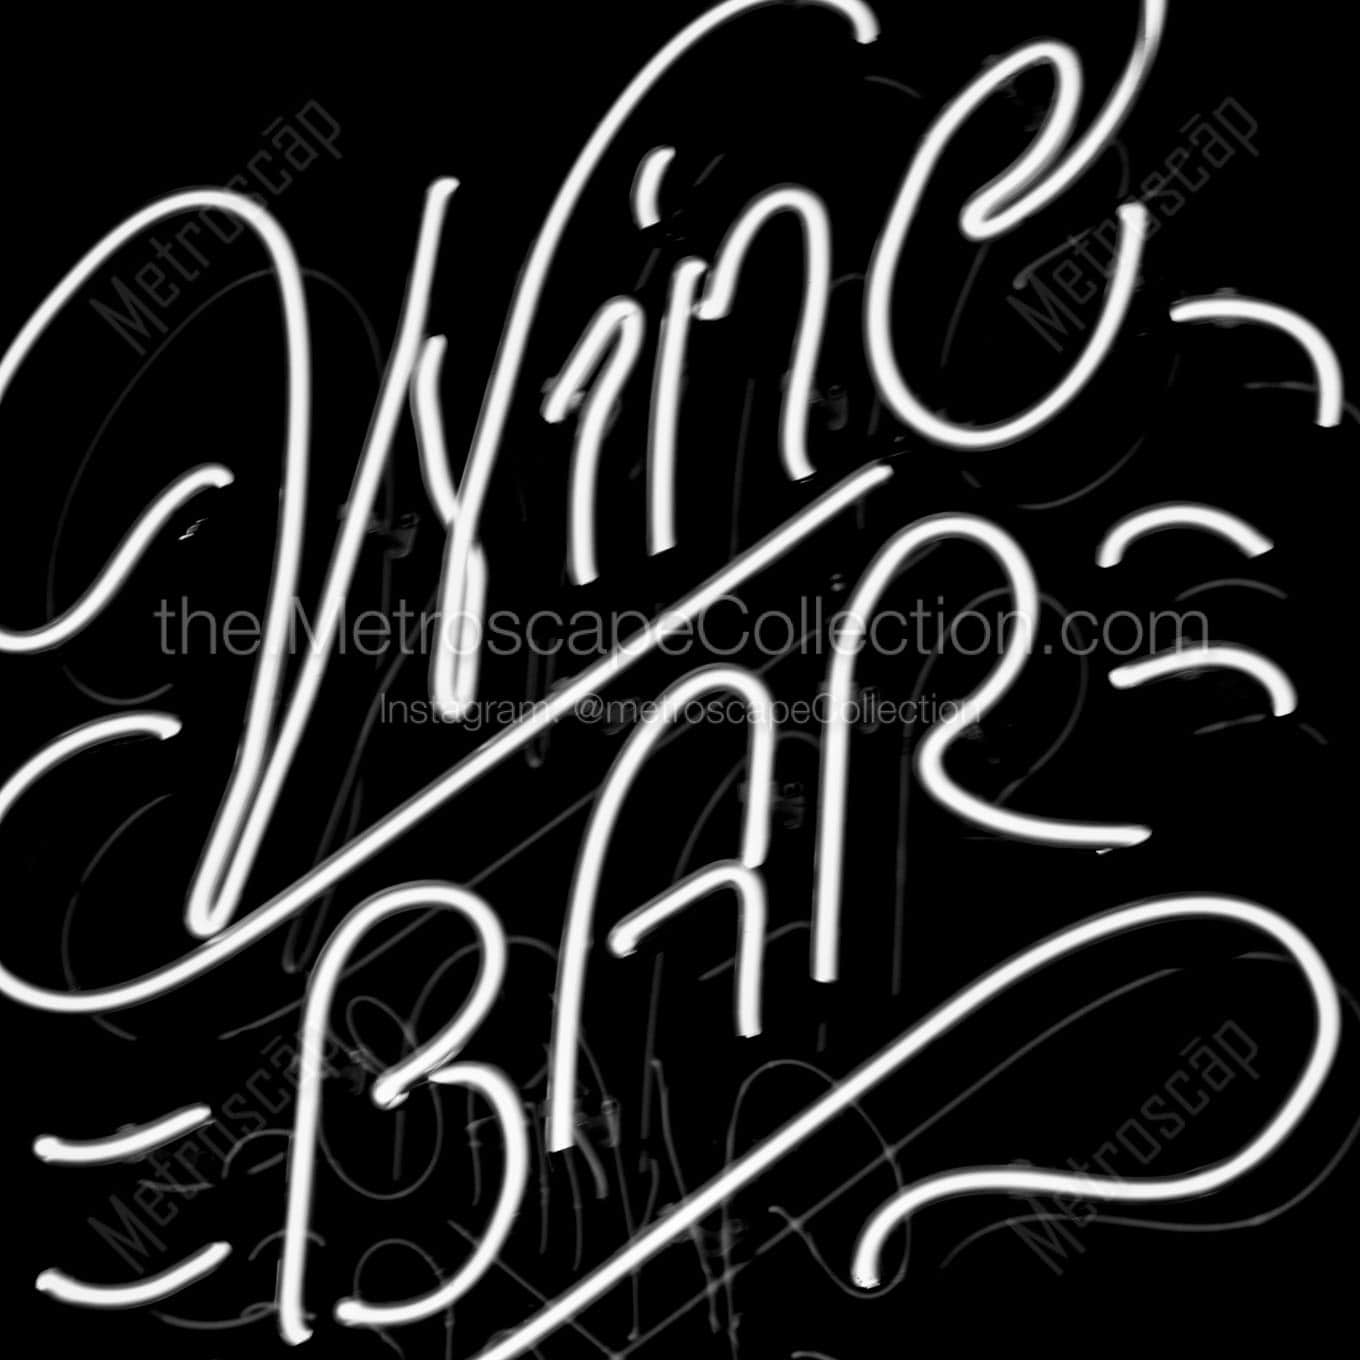 wine bar neon sign Black & White Office Art